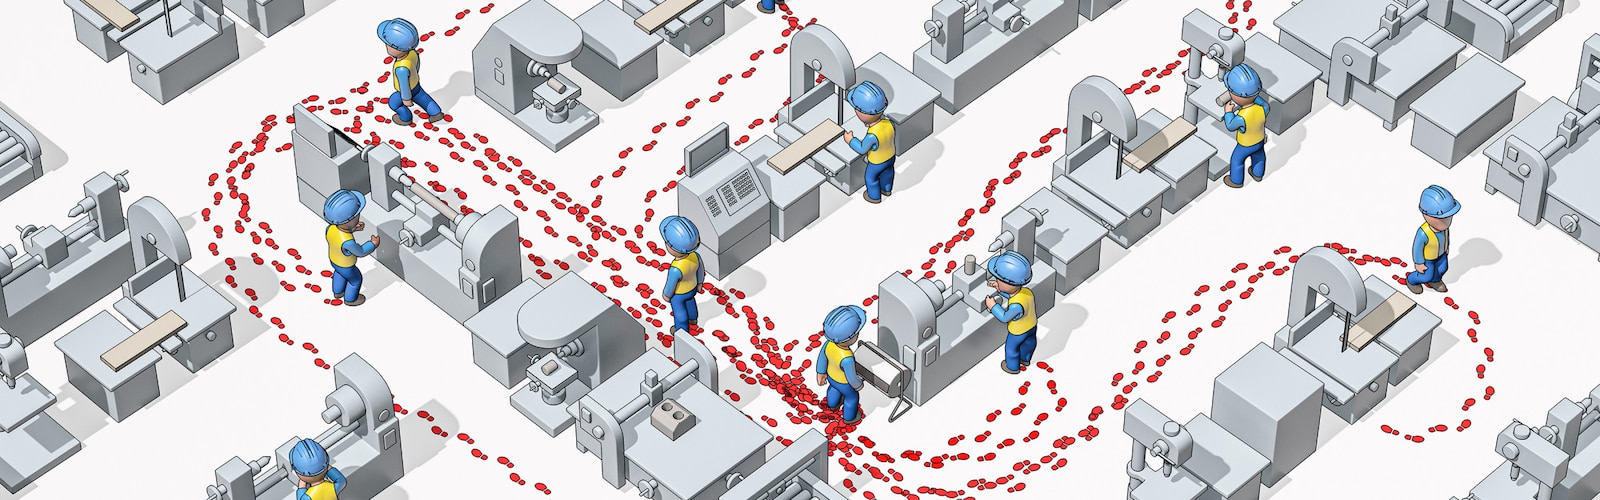 Geïllustreerde afbeelding van werknemers met veiligheidshelmen van bovenaf gezien in een industriële omgeving met hun voetafdrukken zichtbaar om hun bewegingen te illustreren.